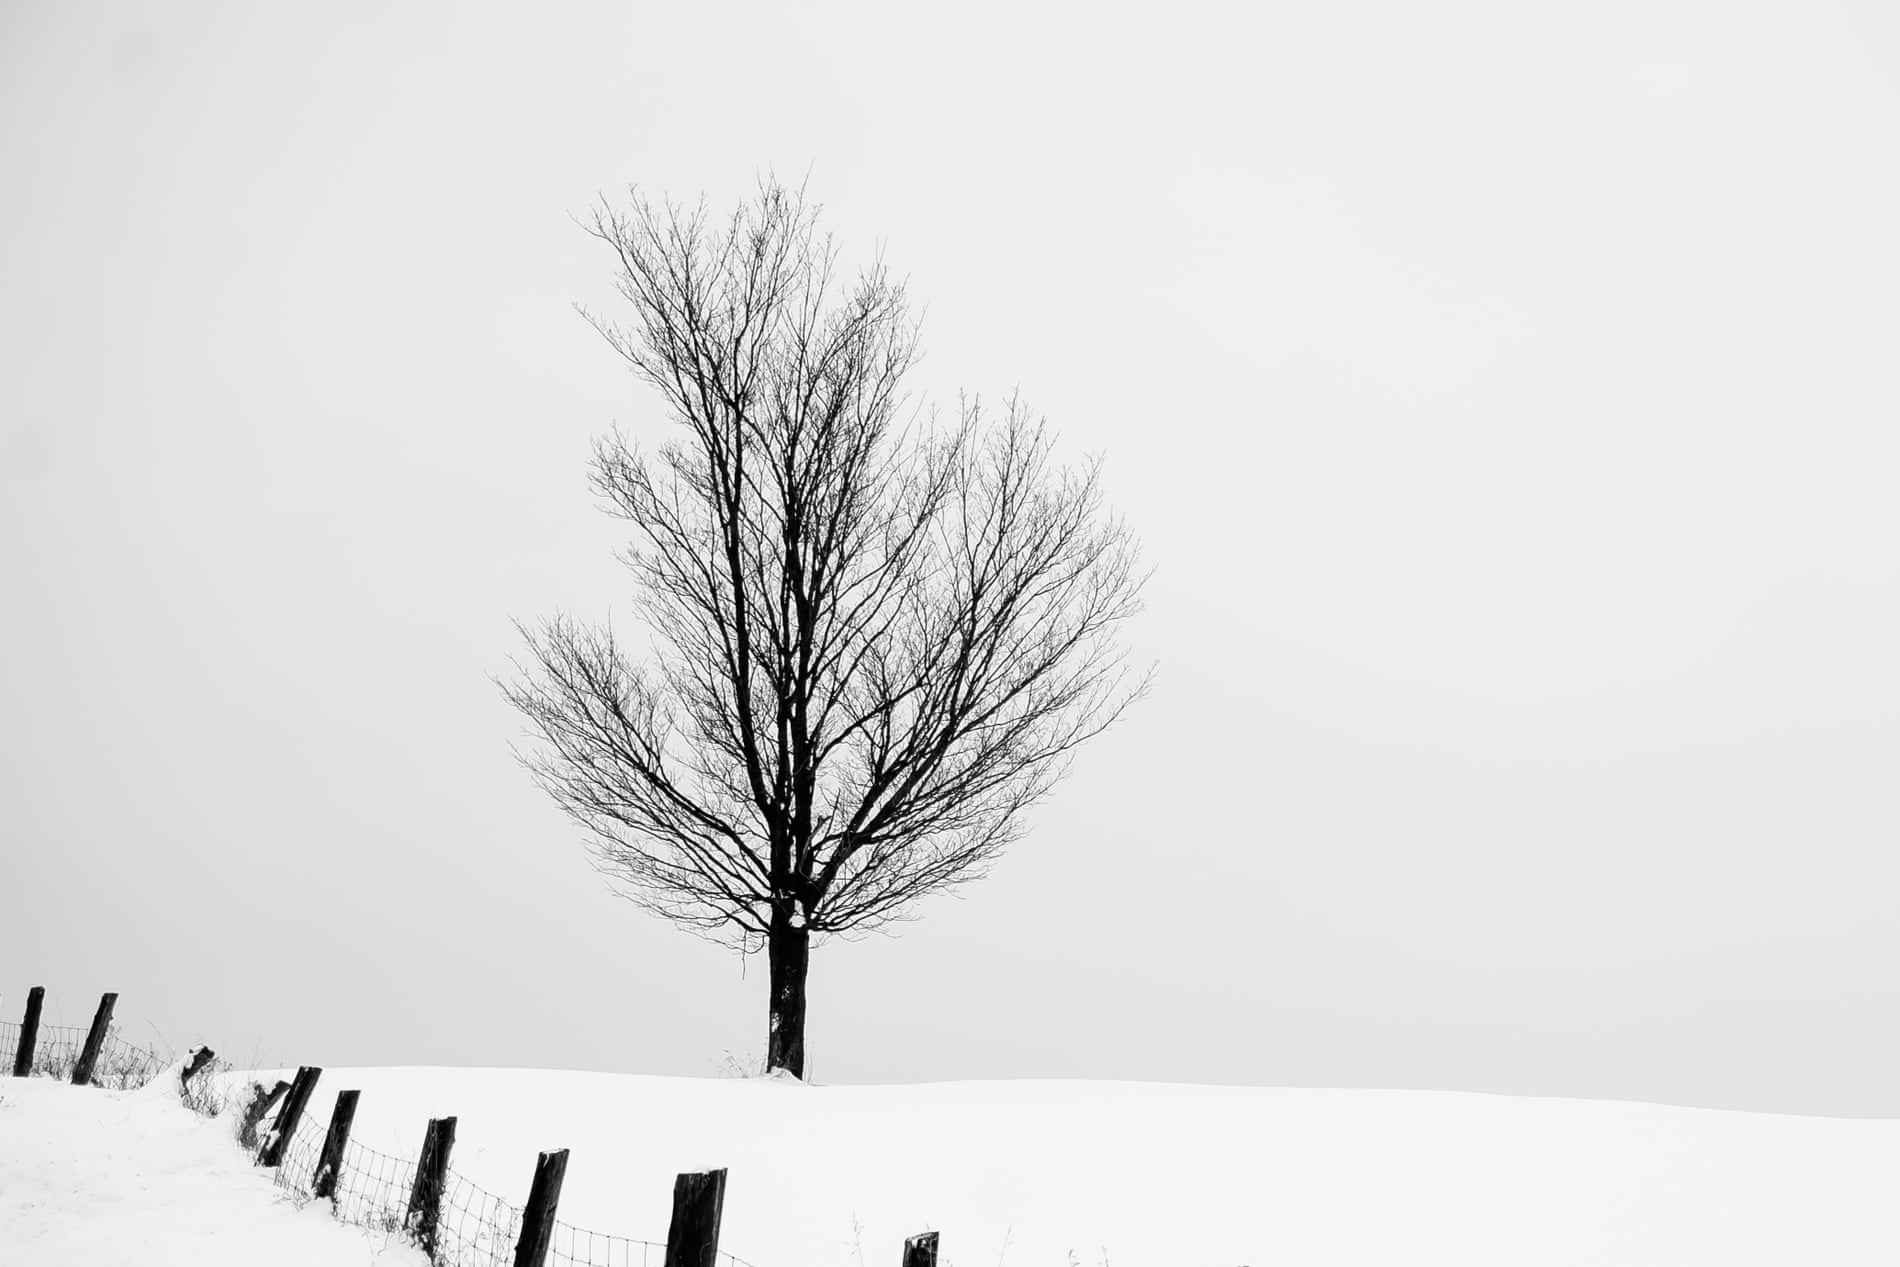 Single tree in snowy field